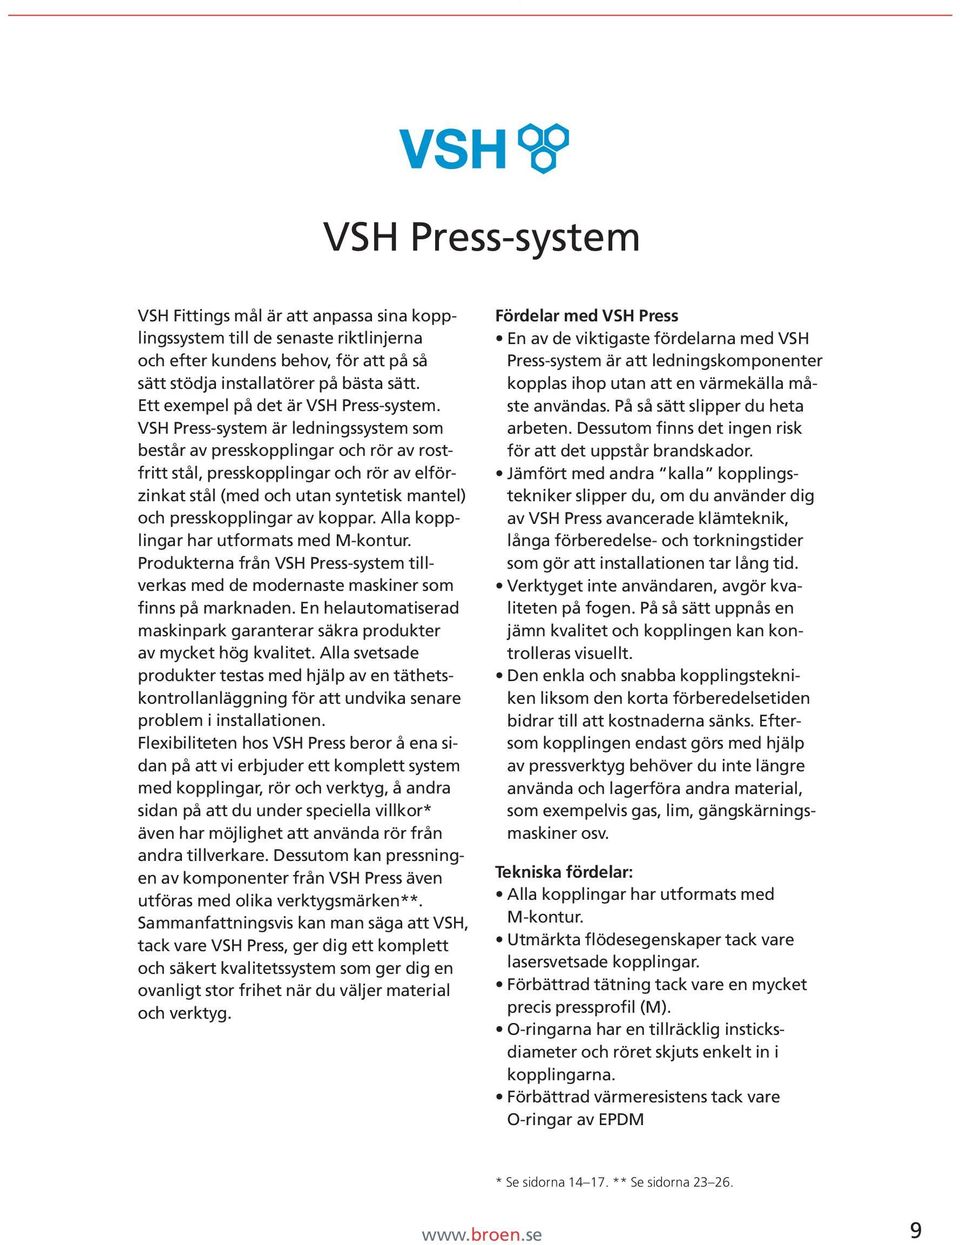 VSH Press-system är ledningssystem som består av presskopplingar och rör av rostfritt stål, presskopplingar och rör av elförzinkat stål (med och utan syntetisk mantel) och presskopplingar av koppar.